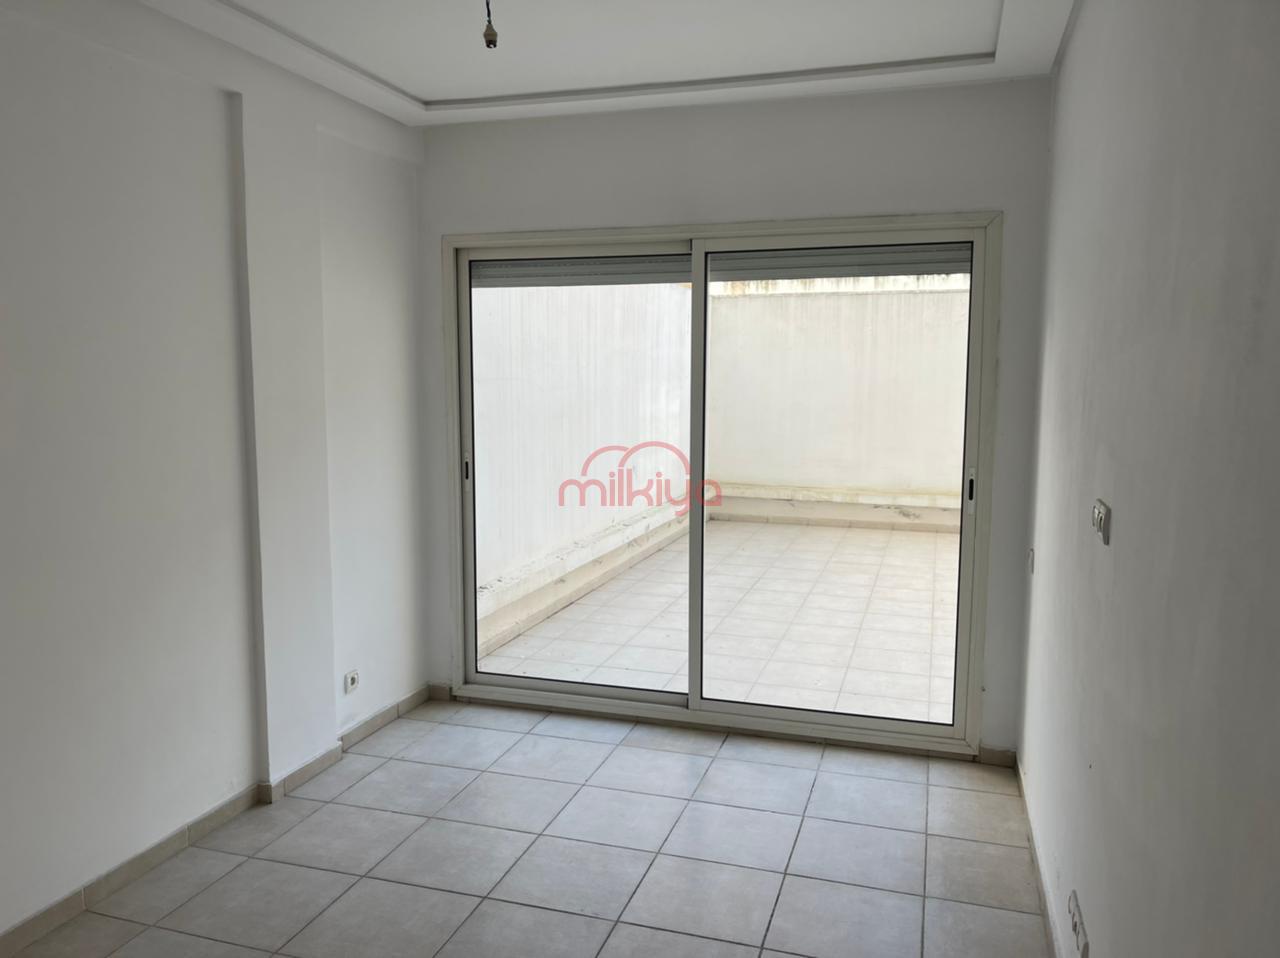 203 - Vente Appartement 107 m² à Casablanca